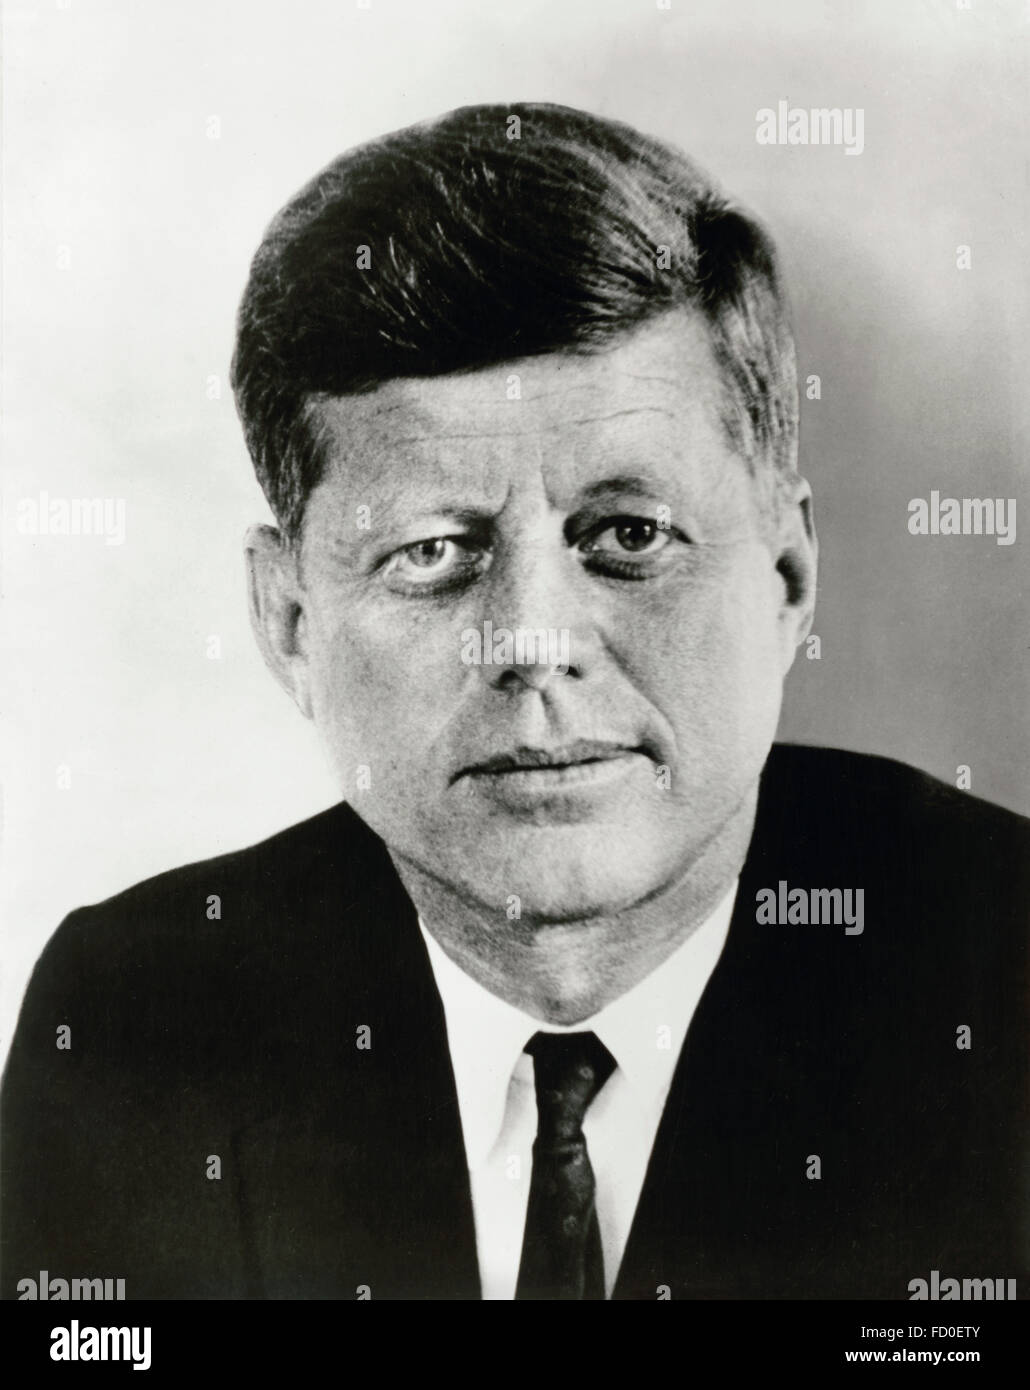 John F Kennedy, Porträt von der 35. Präsident der USA, 1961 Stockfoto